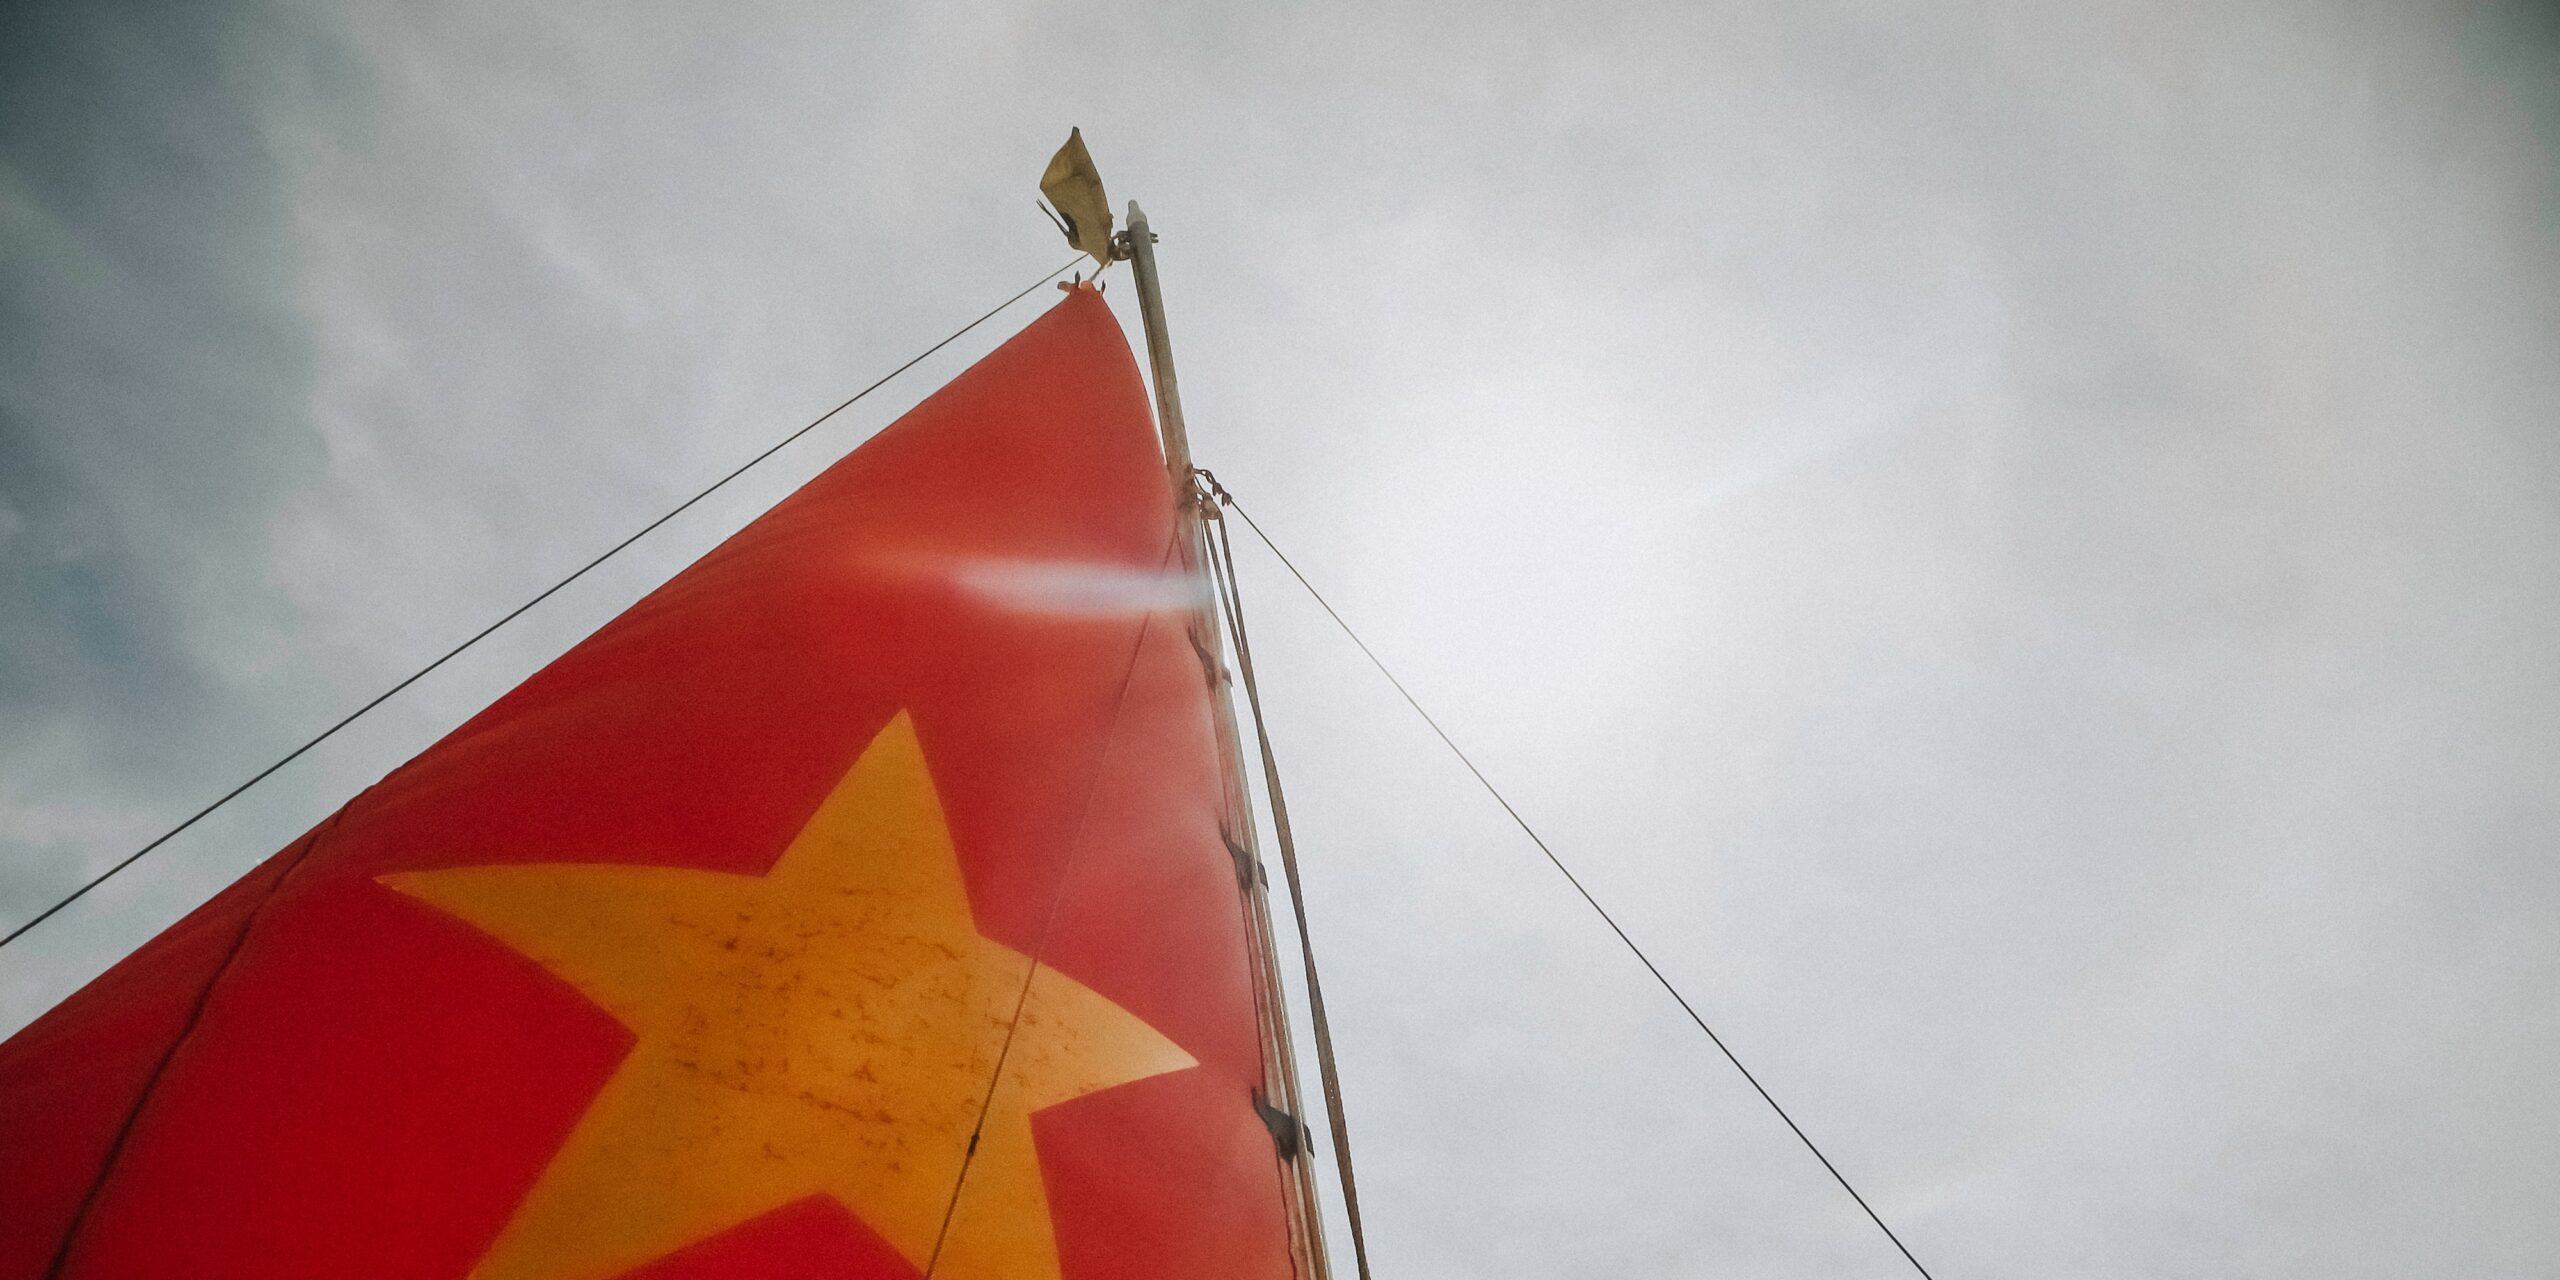 Hình ảnh cánh buồm căng gió với lá cờ đỏ sao vàng